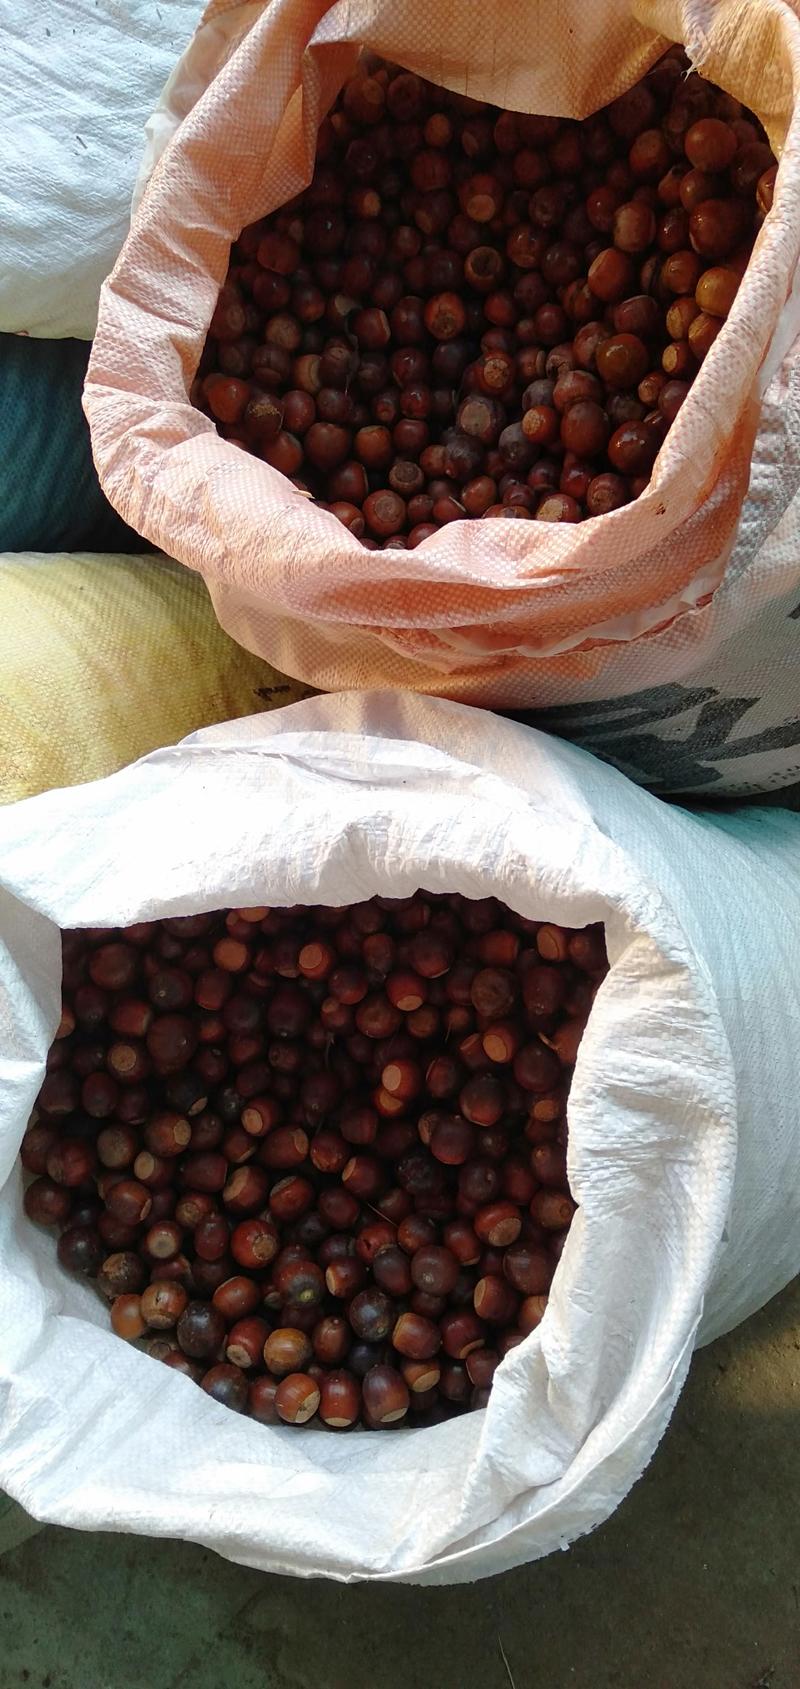 麻栎种子品种纯产地直供量大价优提供种植育苗技术